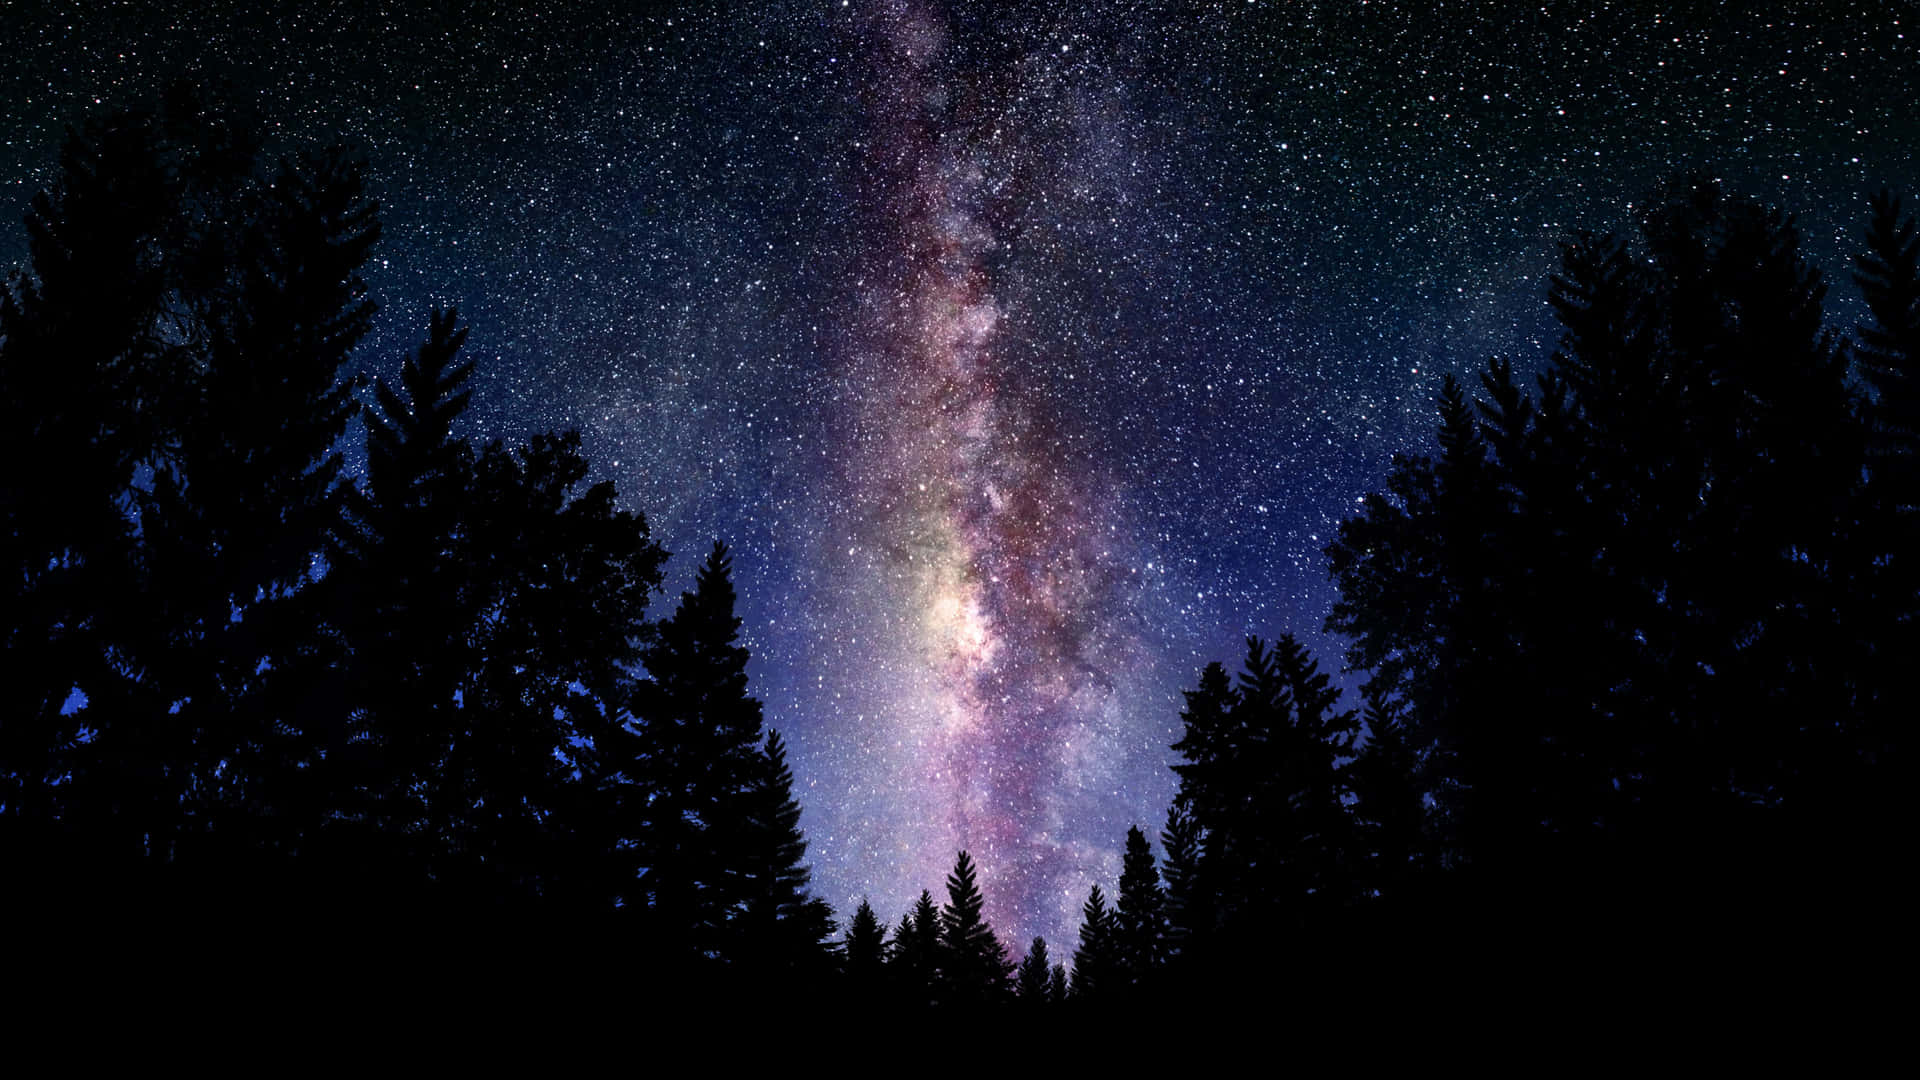 Stjernebilleder skinner i nattehimlen